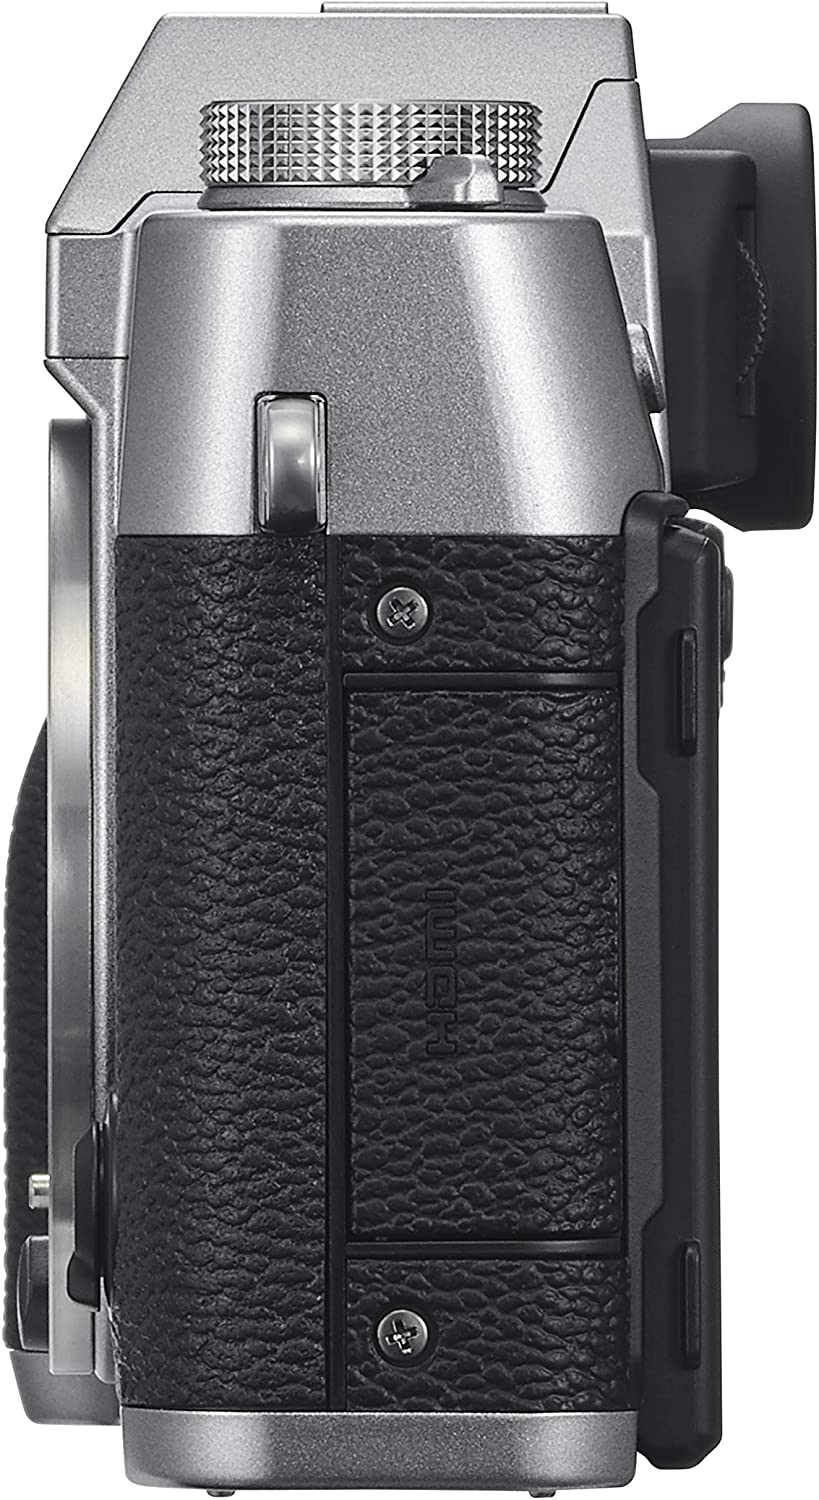 Fujifilm X-T30 Kit 15-45mm f/3.5-5.6 OIS PZ, серый